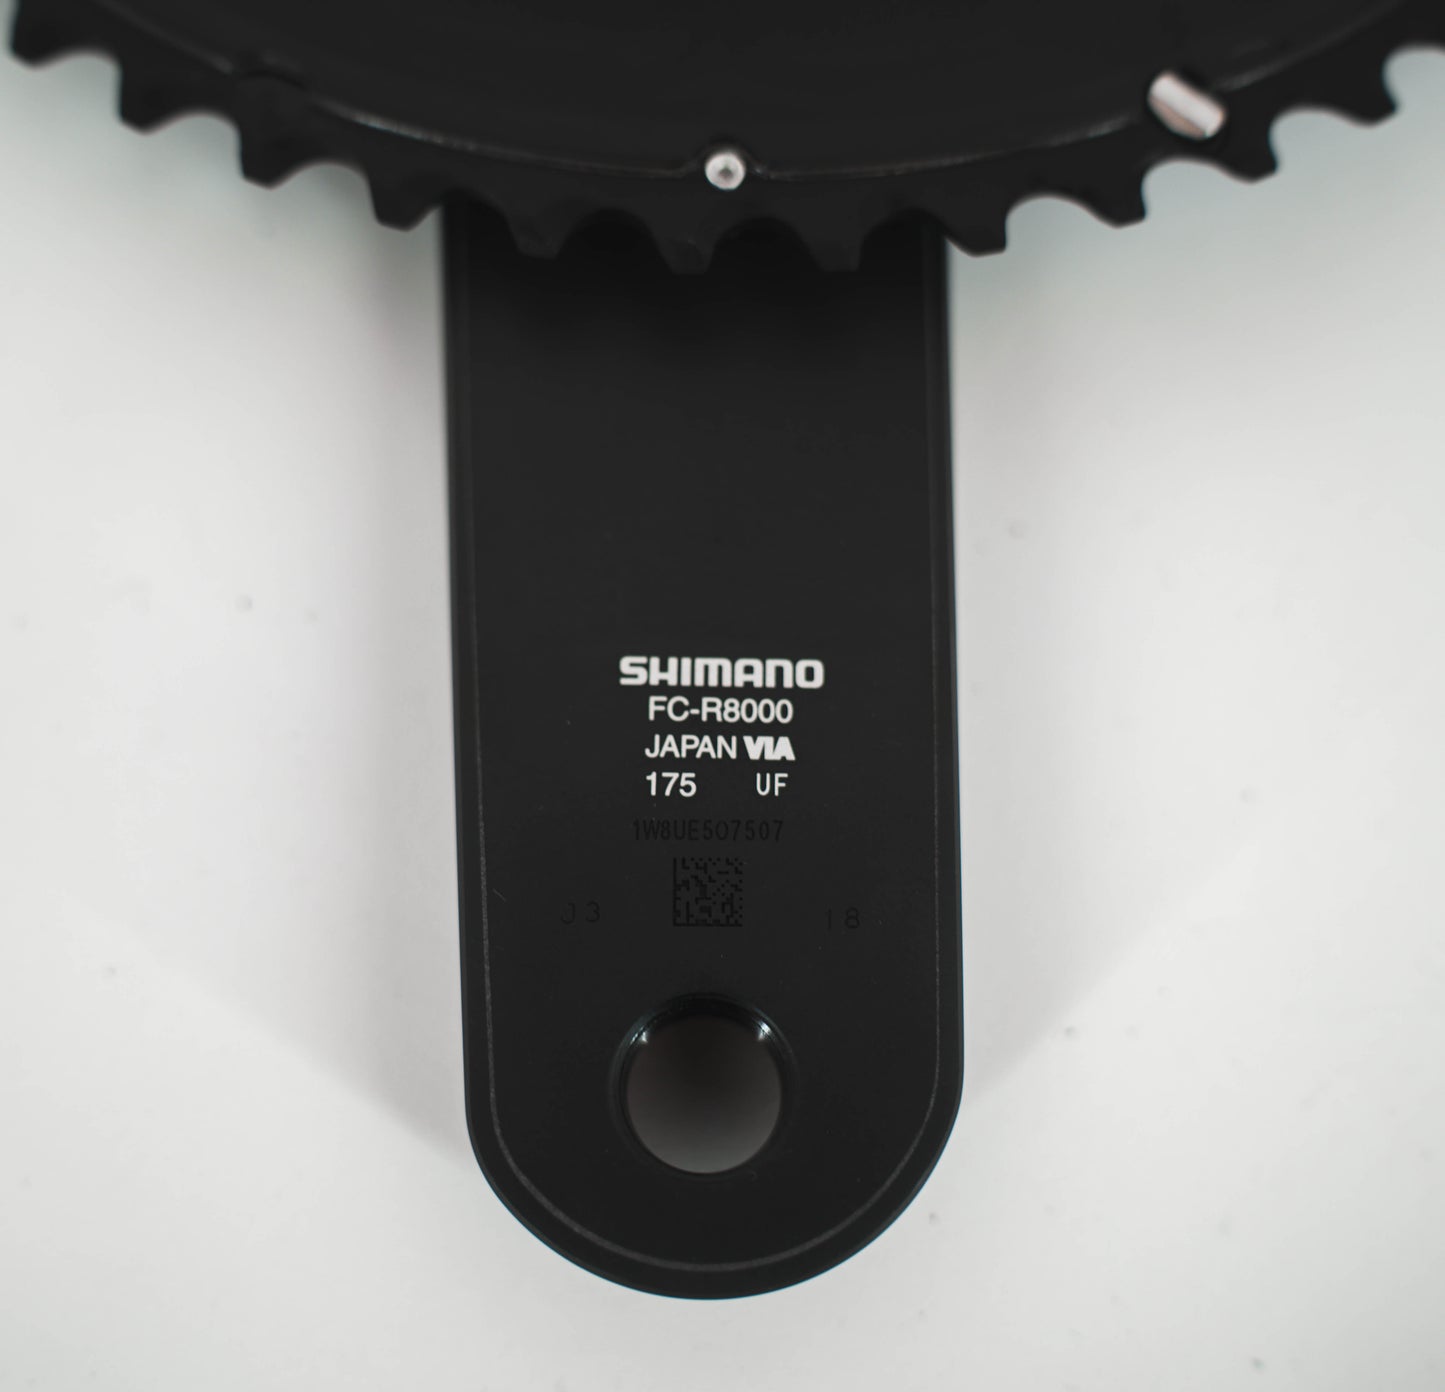 NIEUW Shimano Ultegra R8000 11sp crankset 53-39 175mm